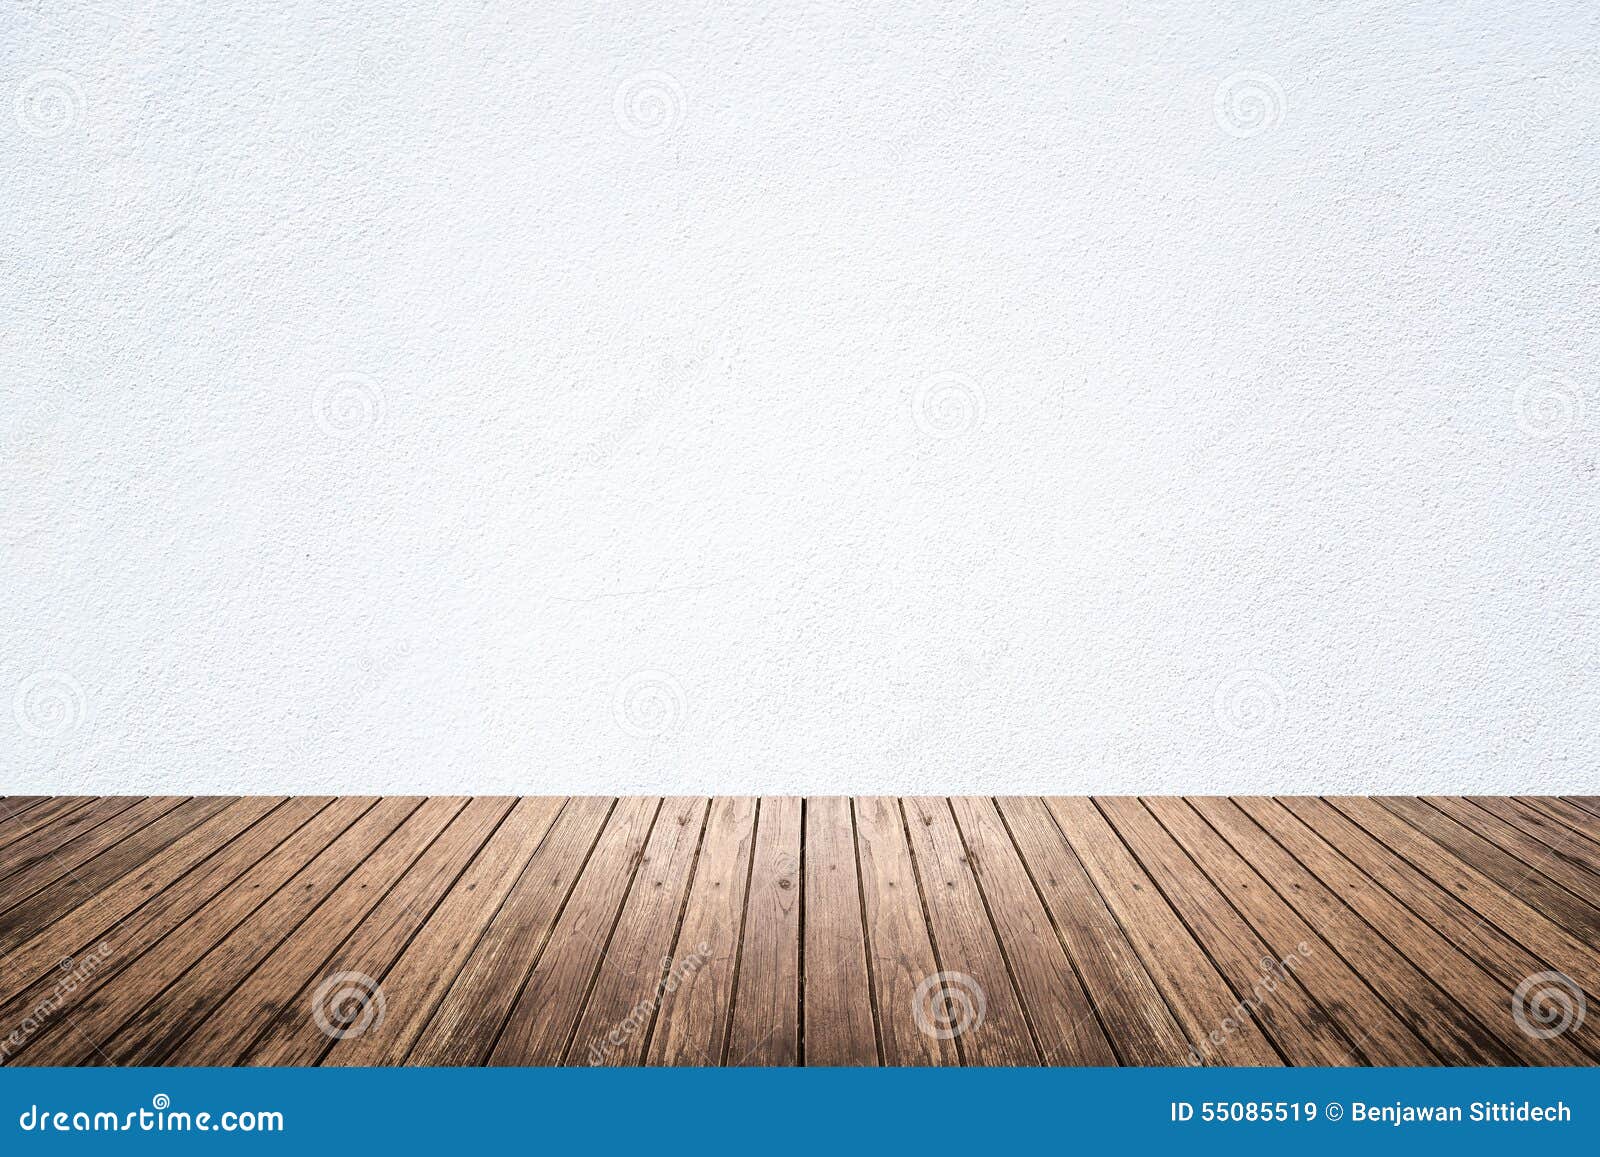 Spiksplinternieuw Lege Ruimte Van Witte Muur En Houten Vloer Stock Afbeelding FE-81